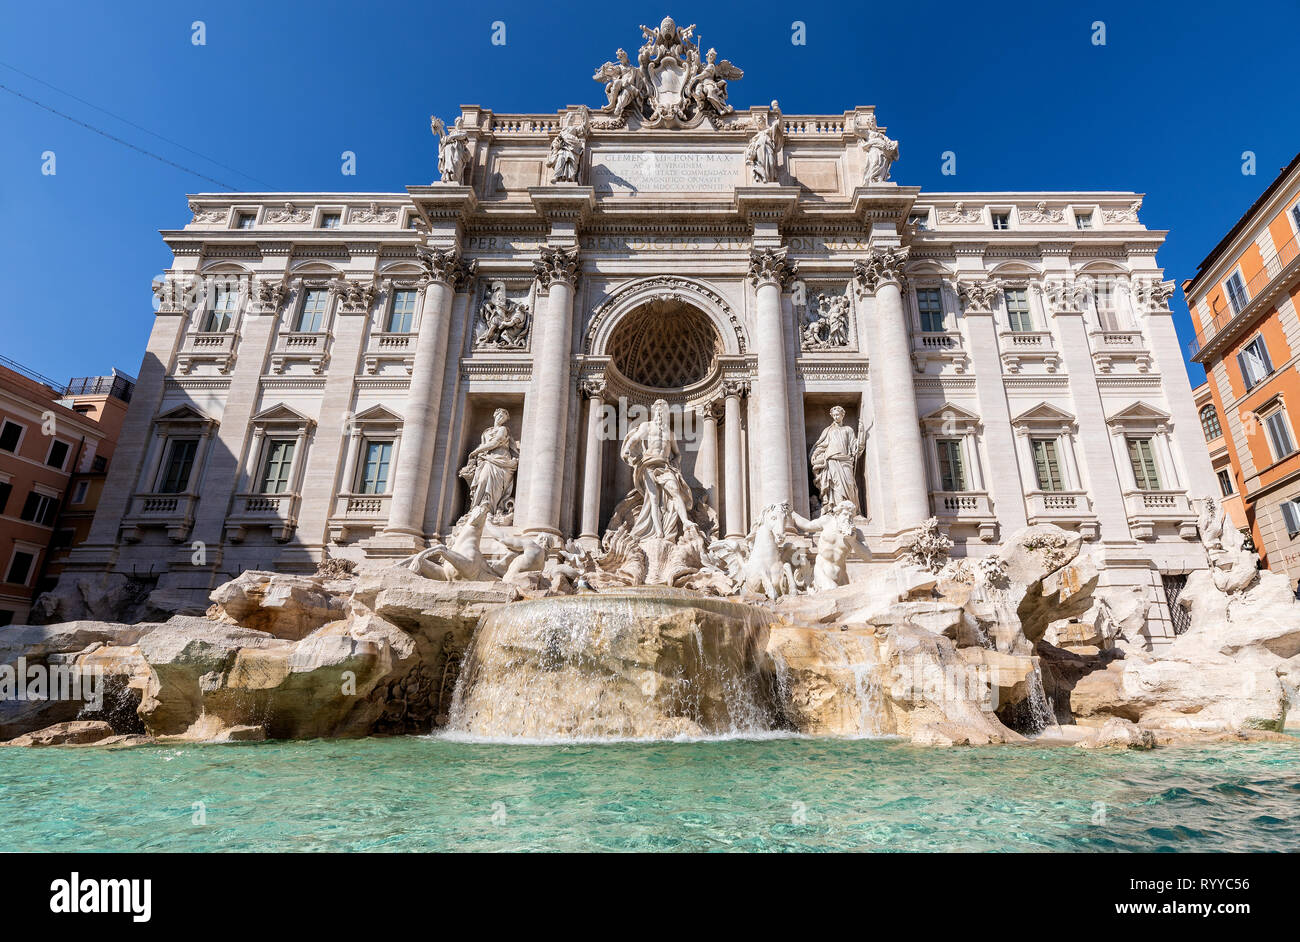 La fontaine de Trevi est la plus grande et l'une des plus célèbres fontaines à Rome et parmi les plus célèbres fontaines dans le monde. Banque D'Images